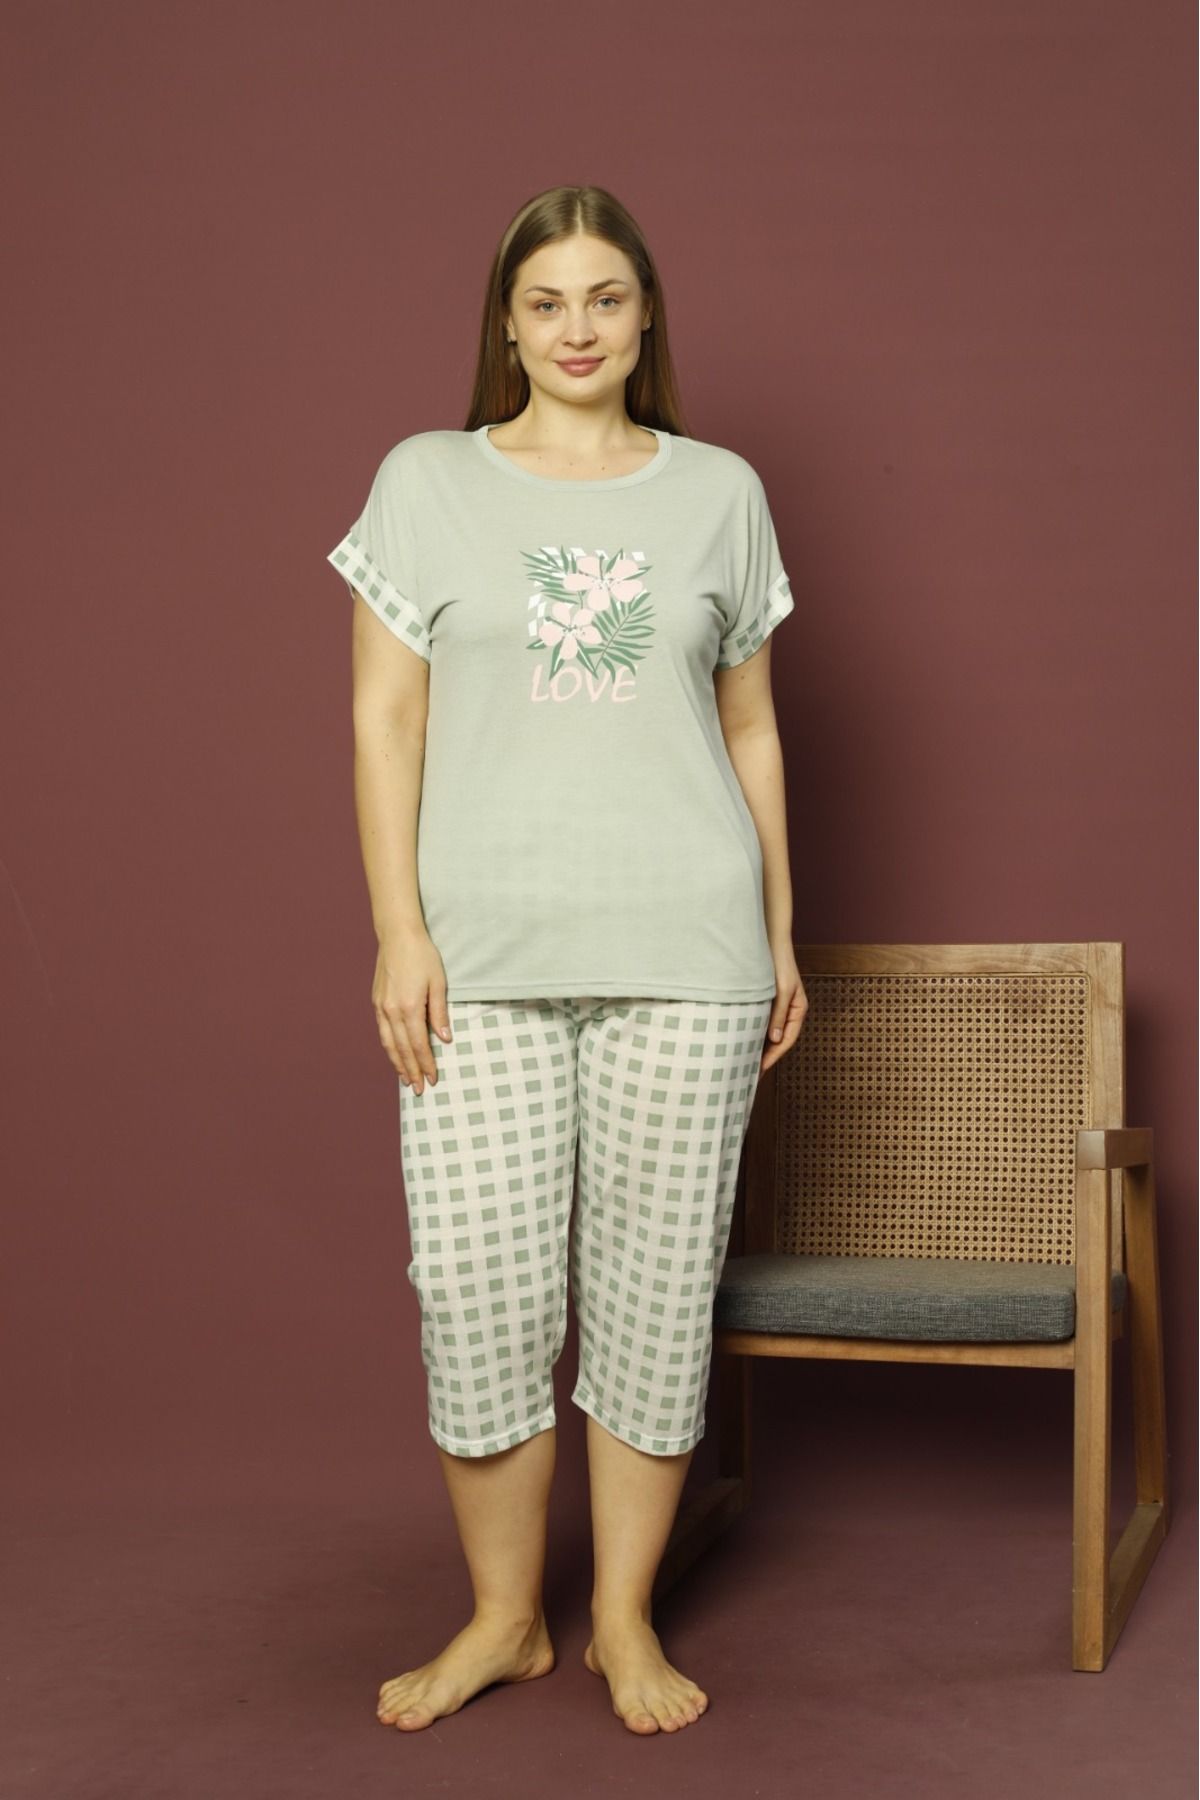 makkash %100 Pamuklu Büyük Beden Yeşil Love Desenli Battal Bermuda Kadın Pijama Takımı